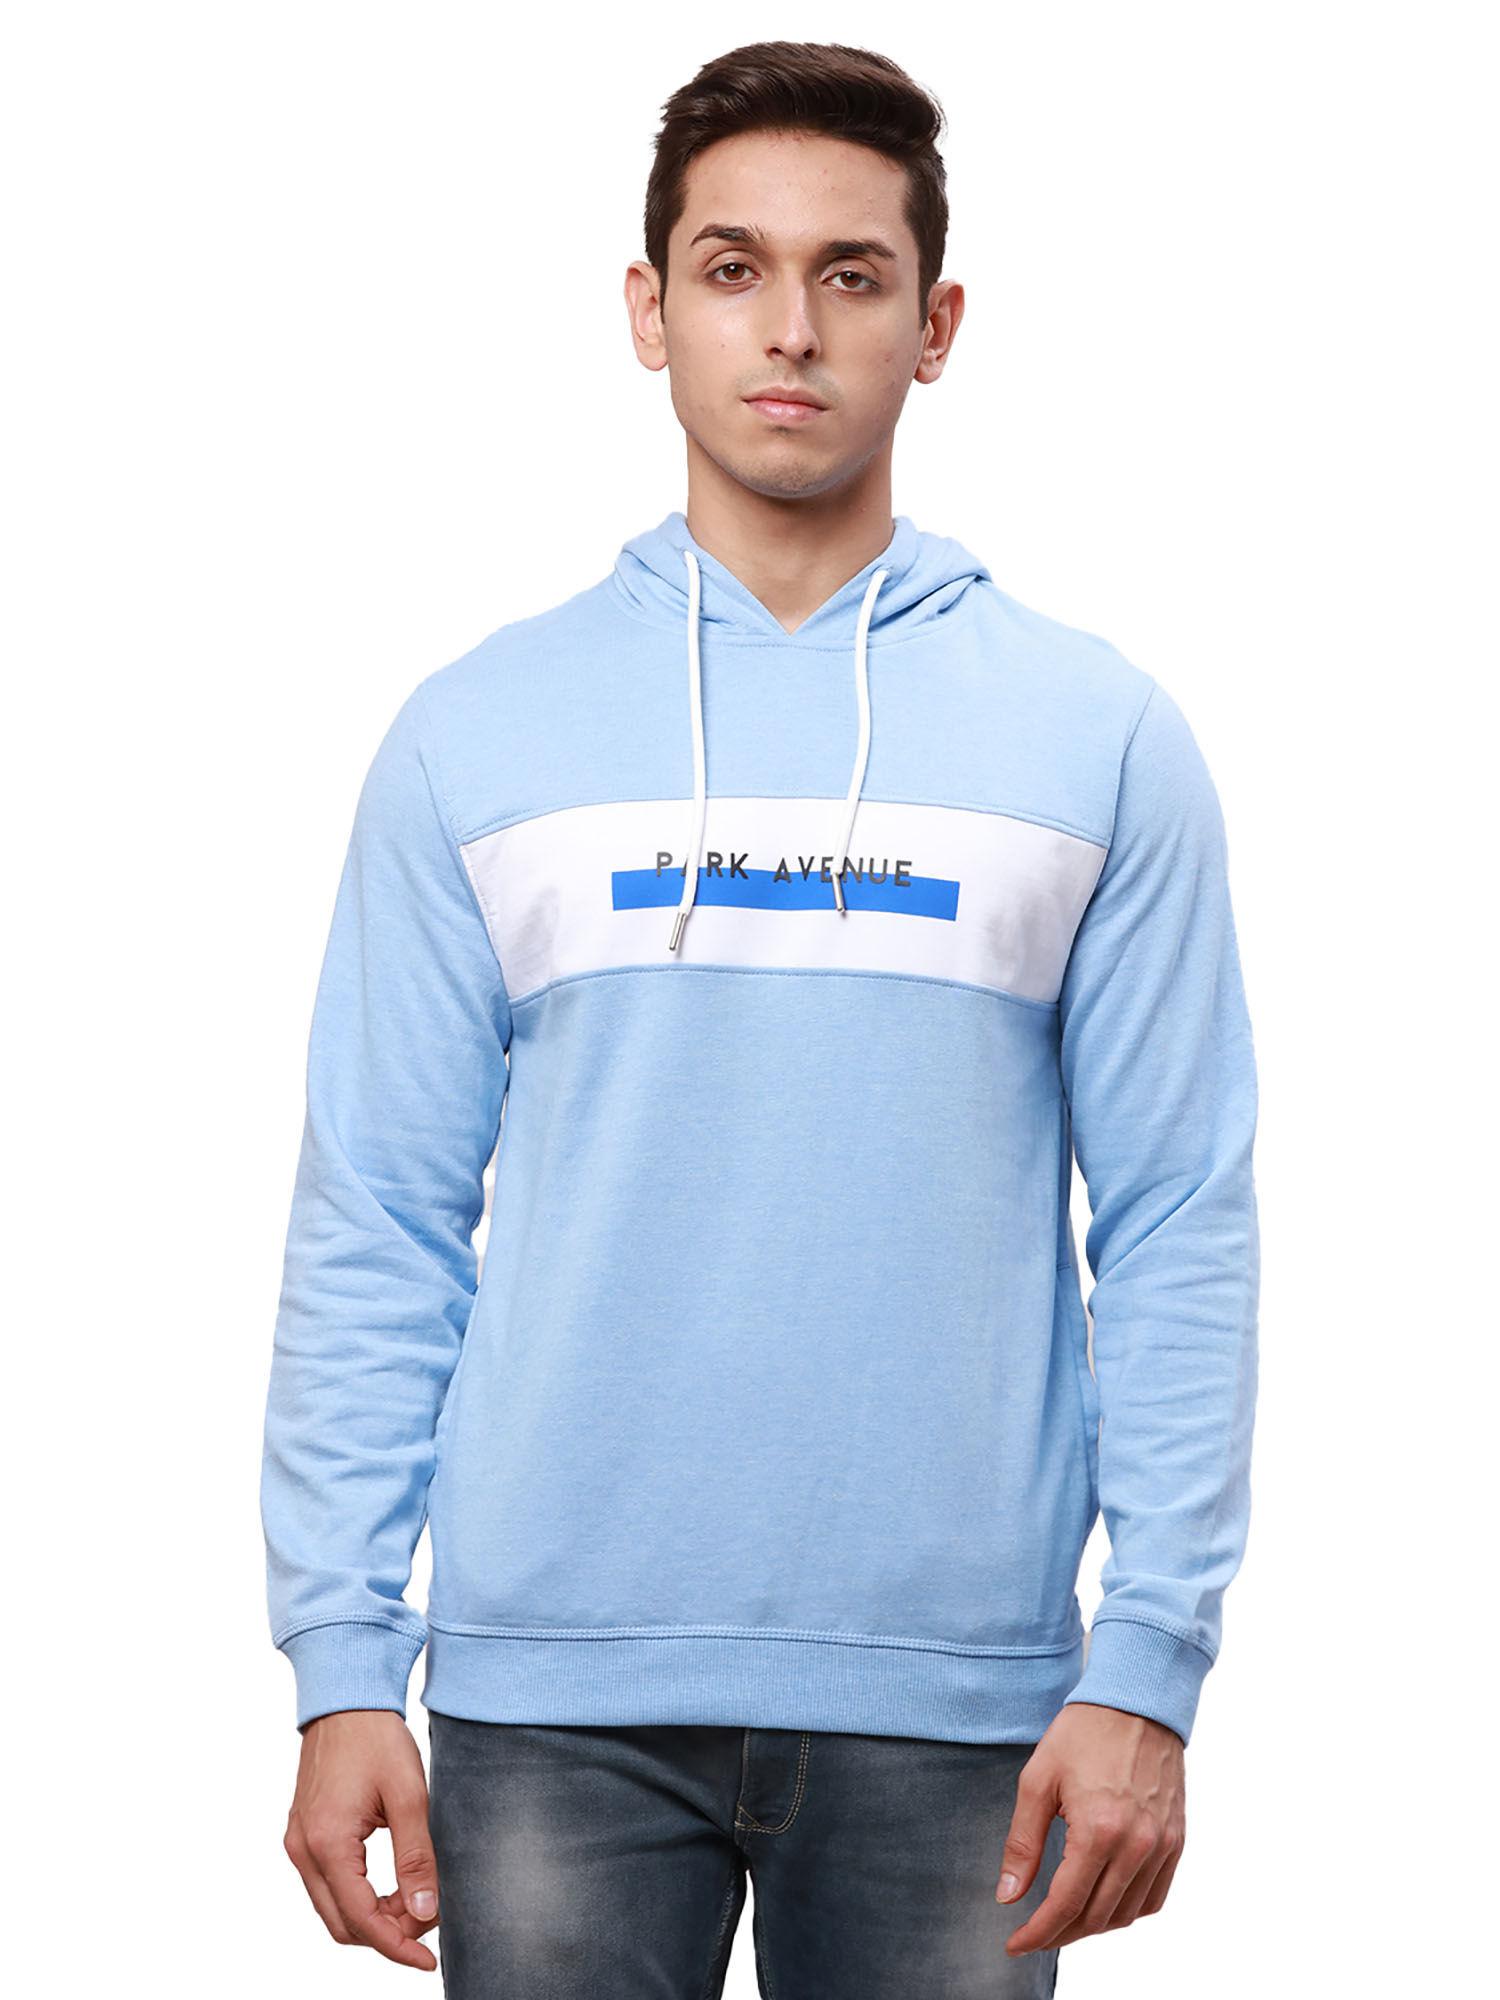 slim-fit-solid-medium-blue-hoodie